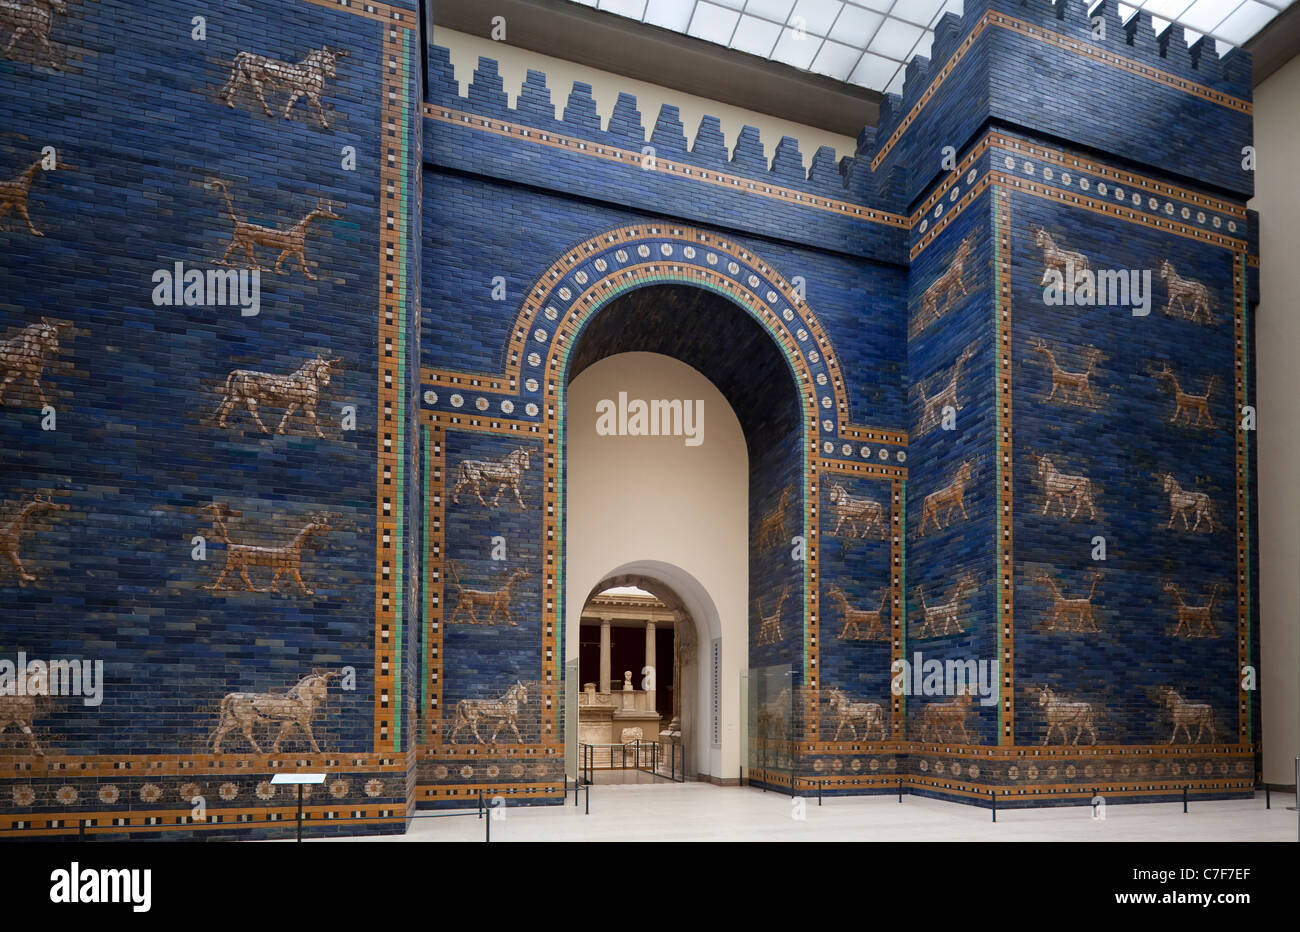 La porte d'Ishtar, Musée de Pergame, Berlin, Allemagne Banque D'Images